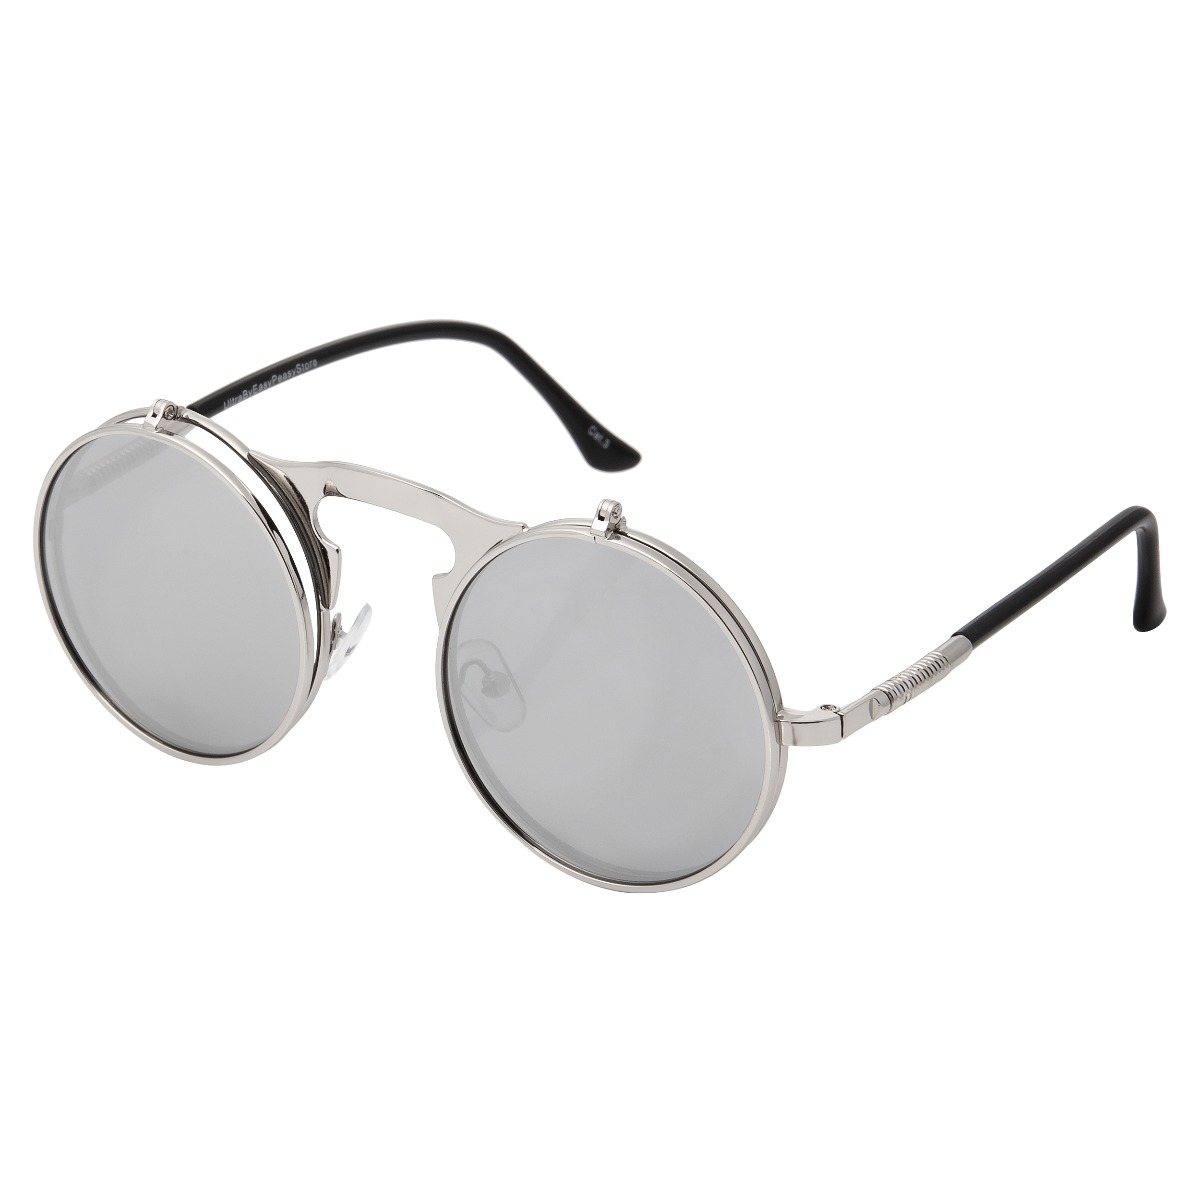 Silver Mirrored Steampunk Glasses Cyber Round Retro Goggles